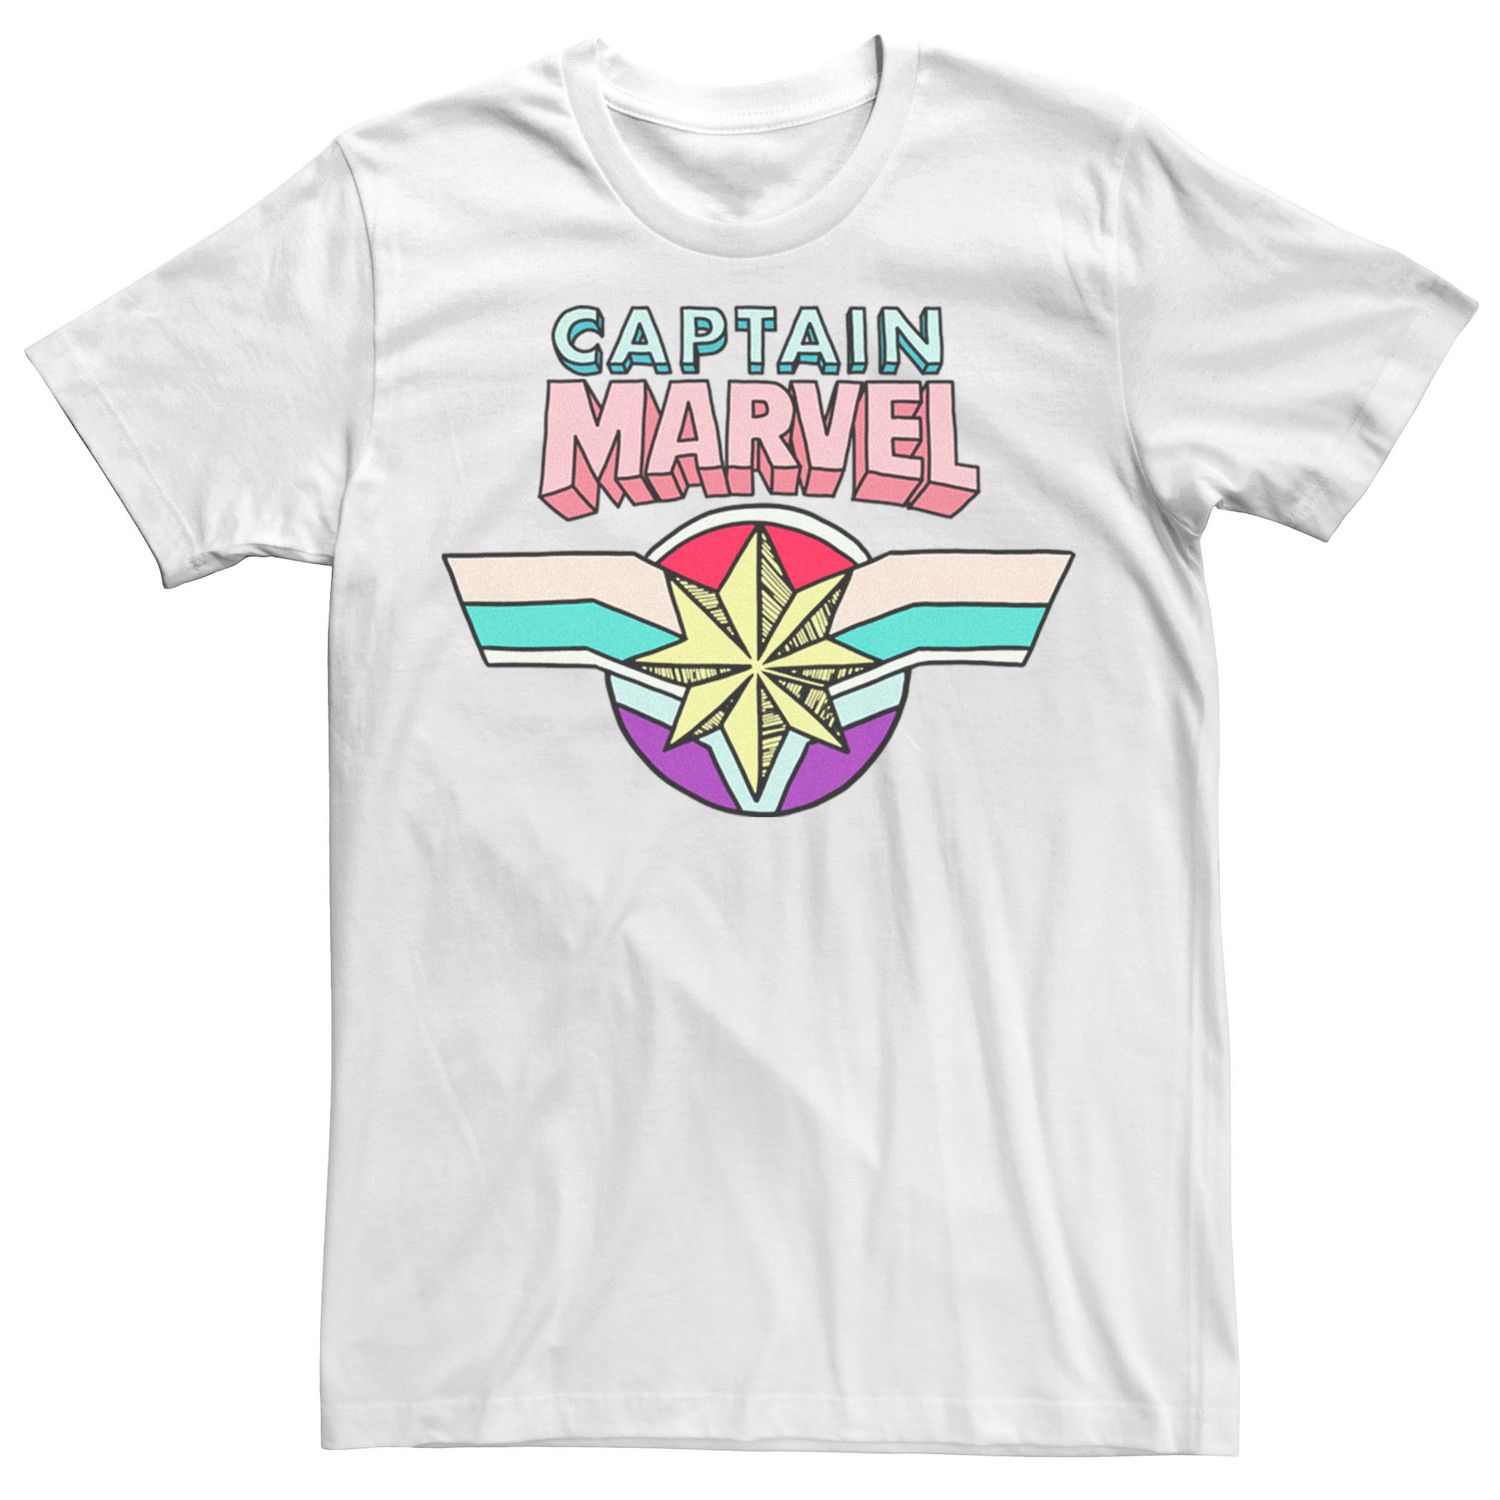 Мужская футболка с логотипом в мультяшном стиле Captain Marvel